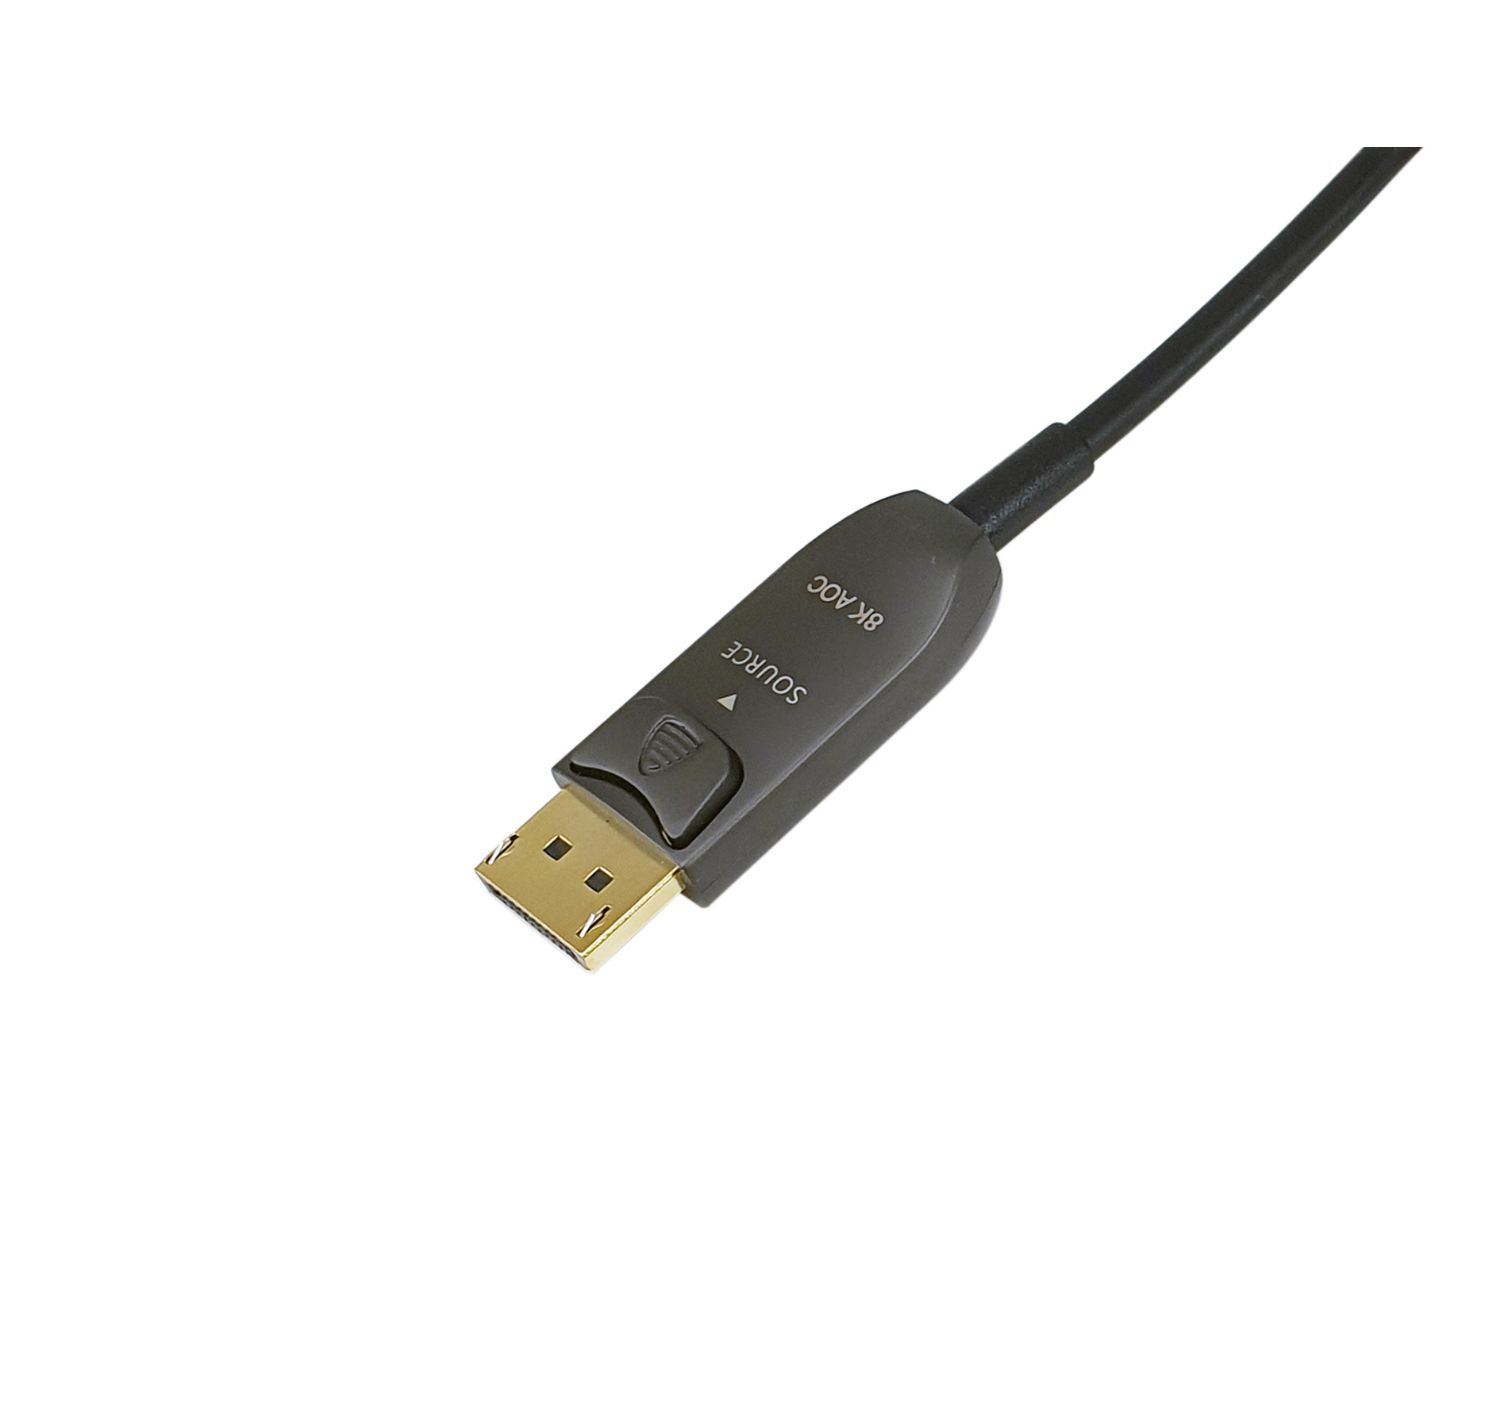 EQ119443 - Cable EQUIP DP/M a DP/M 30m Negro (EQ119443)